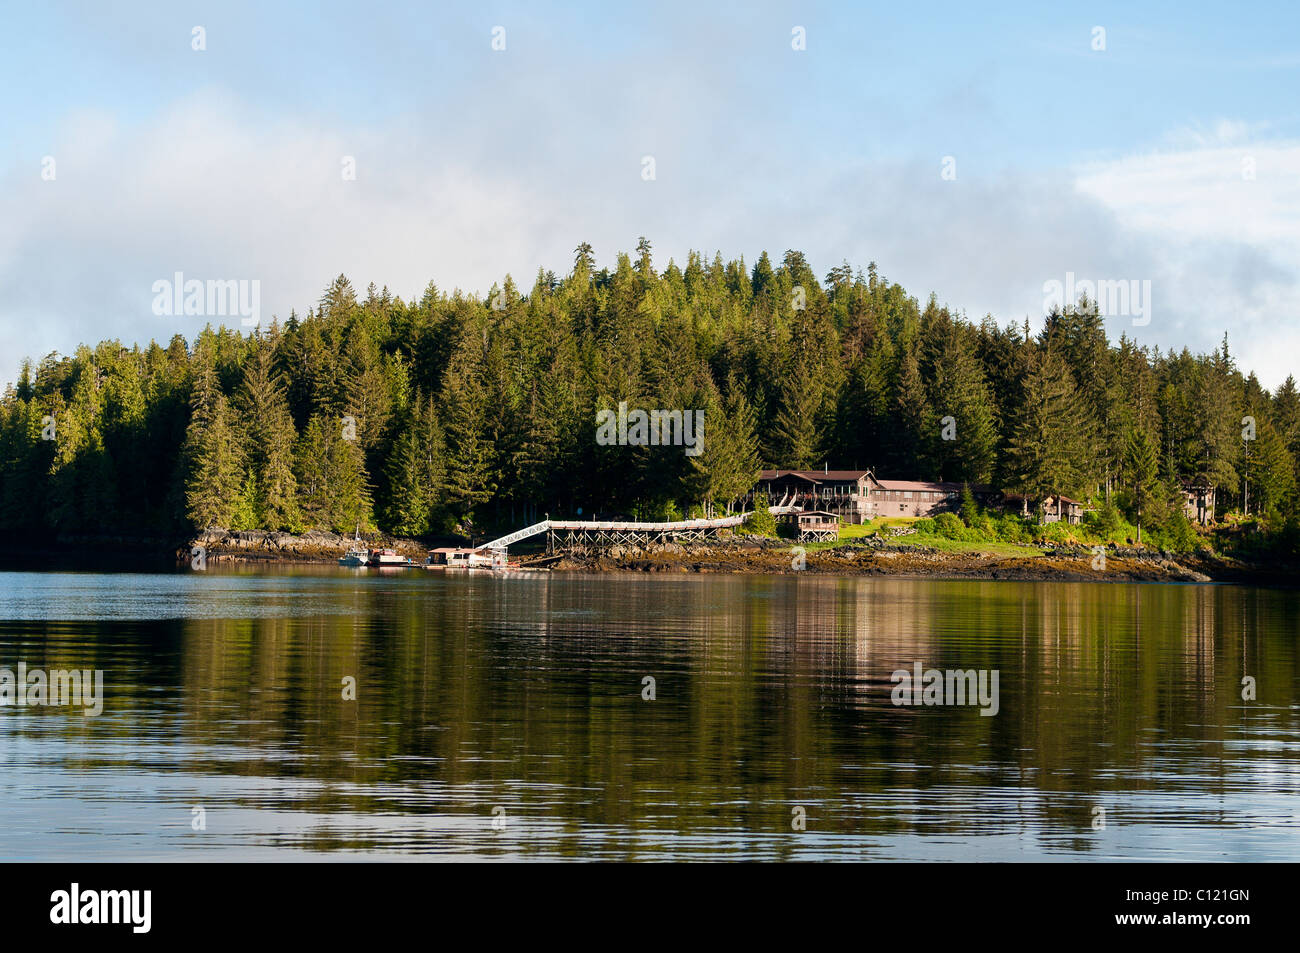 De l'Alaska. Oui Bay Lodge, oui Bay, la péninsule de Cleveland, le passage de l'intérieur, la Forêt Nationale Tongass, sud-est de l'Alaska. Banque D'Images